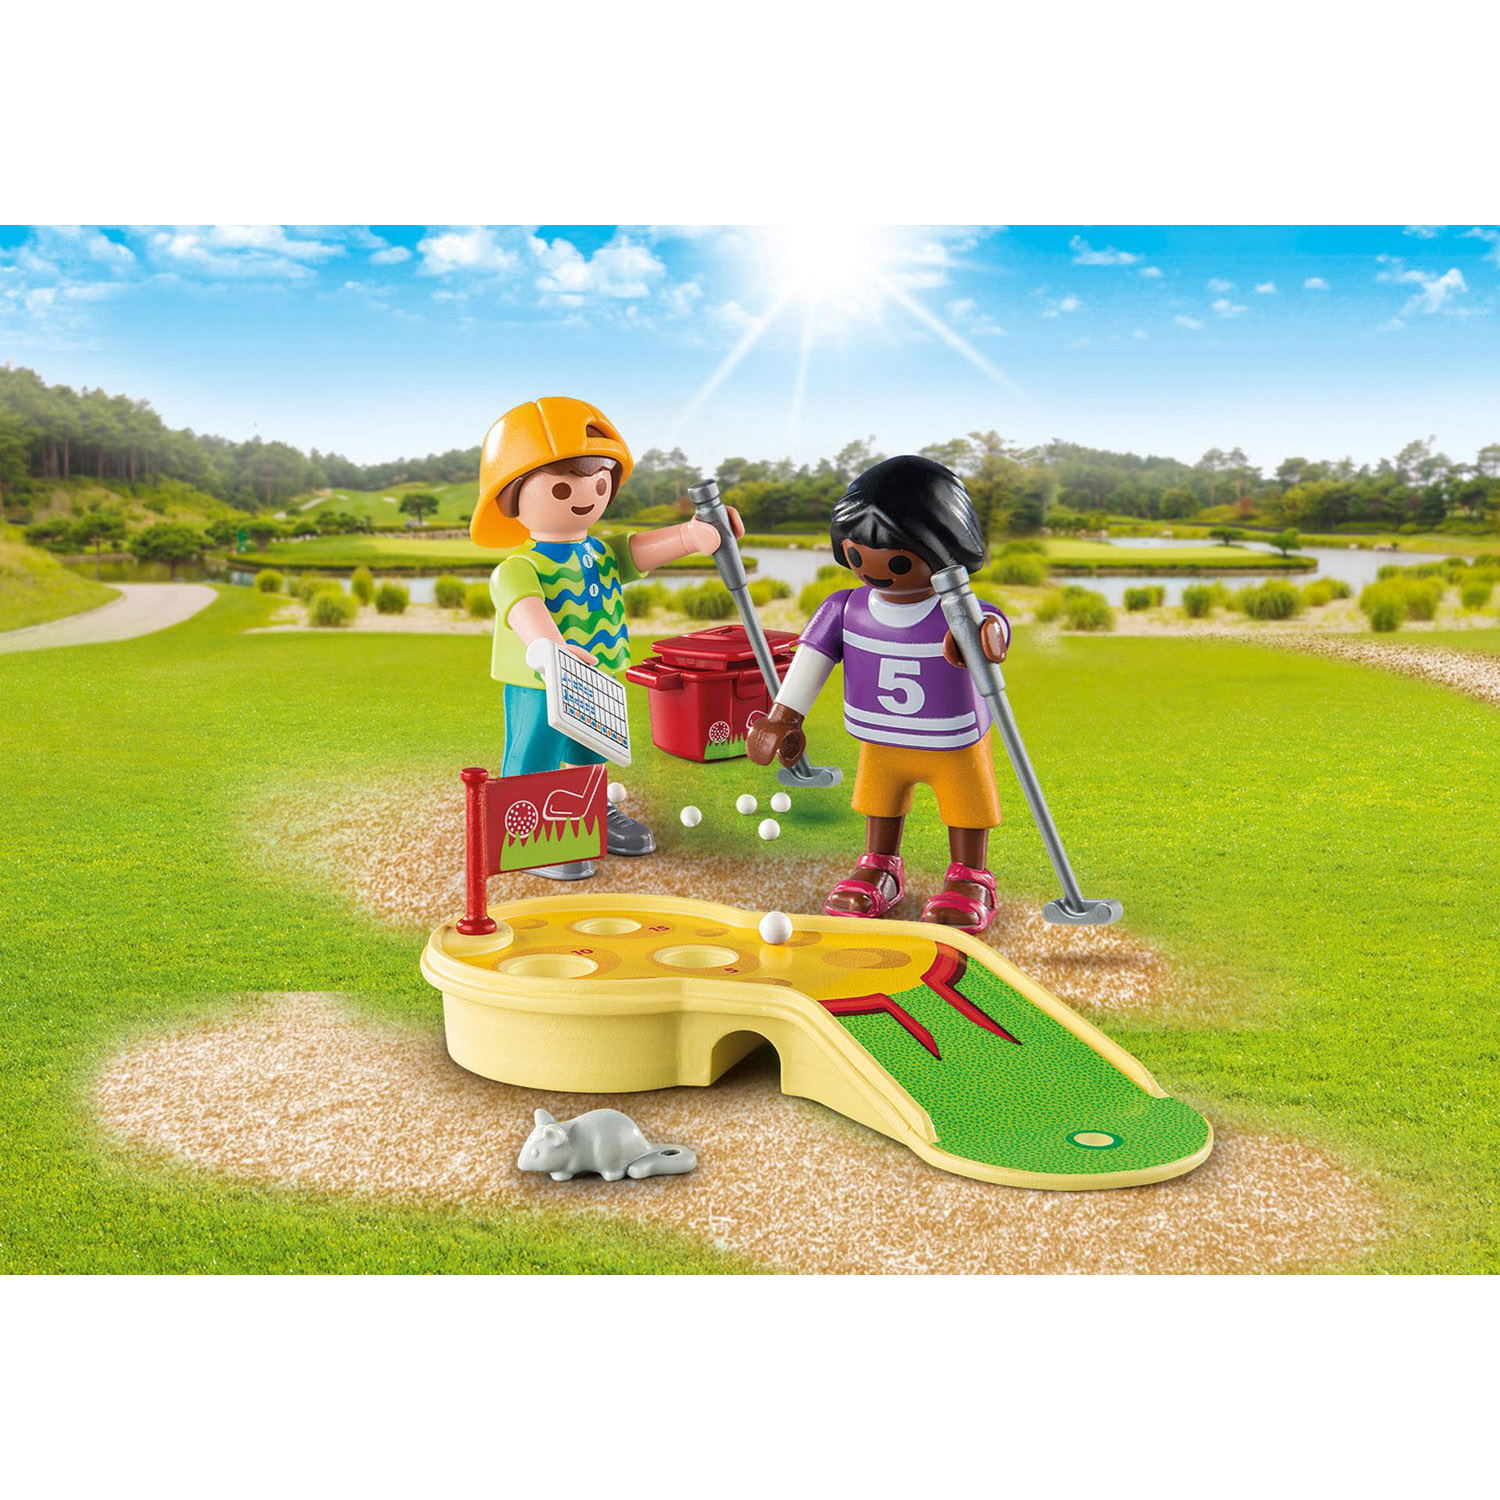 Playmobil Конструктор Играющие дети в минигольф 9439pm - фото 4